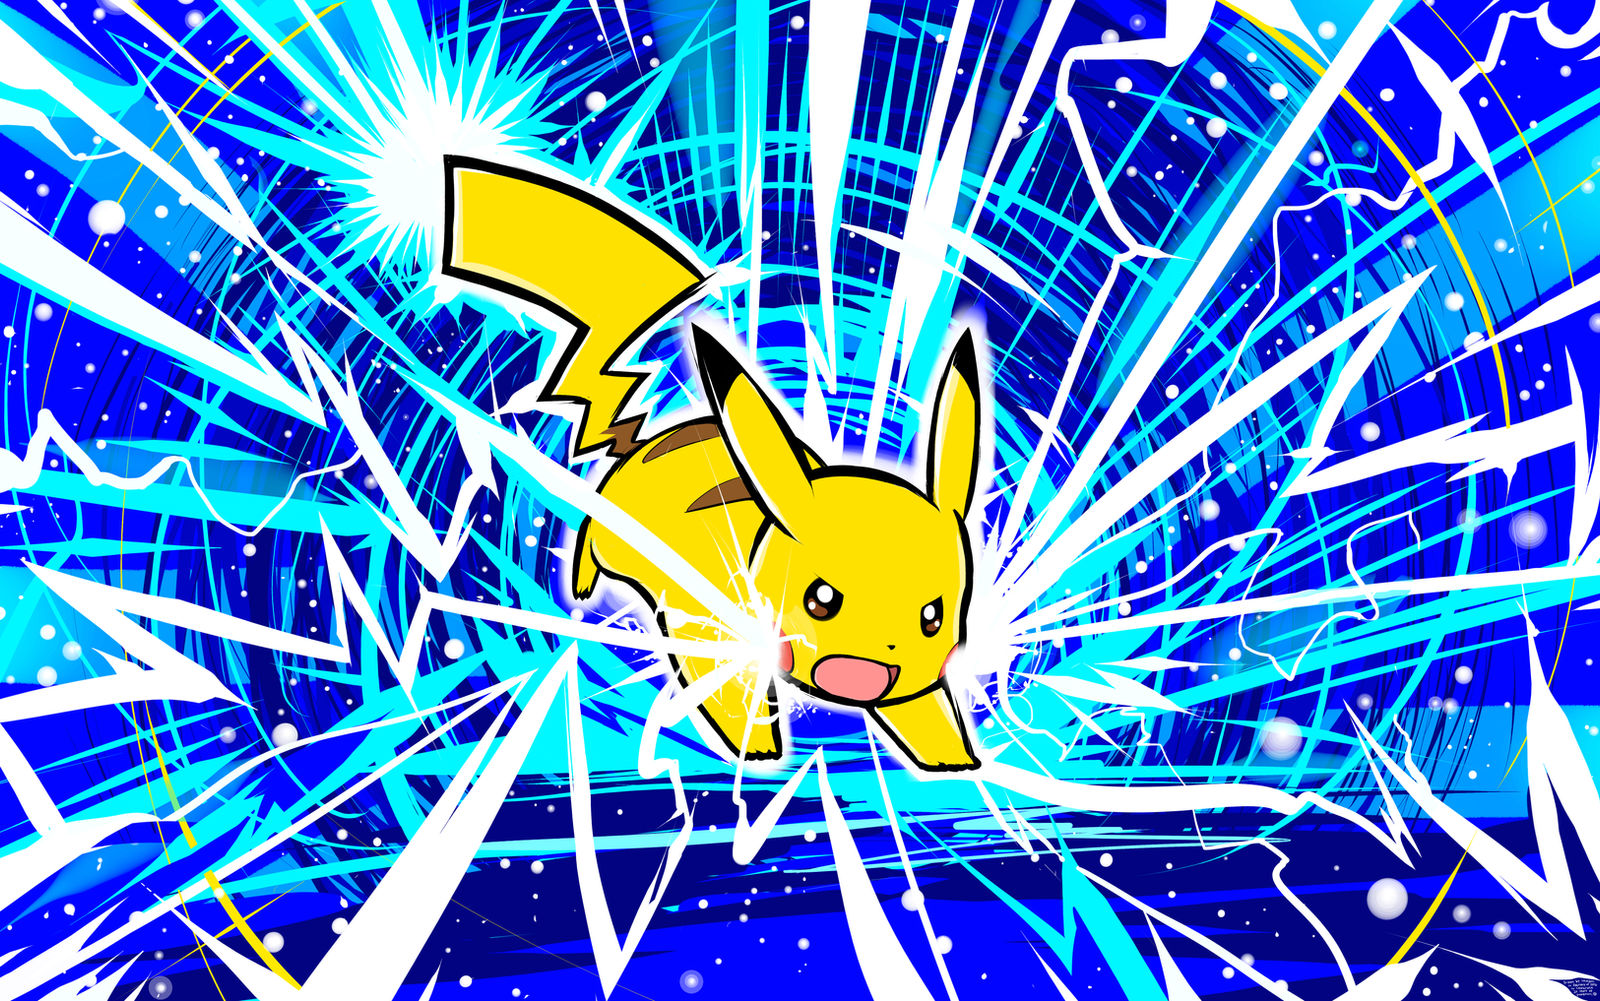 Pikachu | Thunderbolt by ishmam on DeviantArt